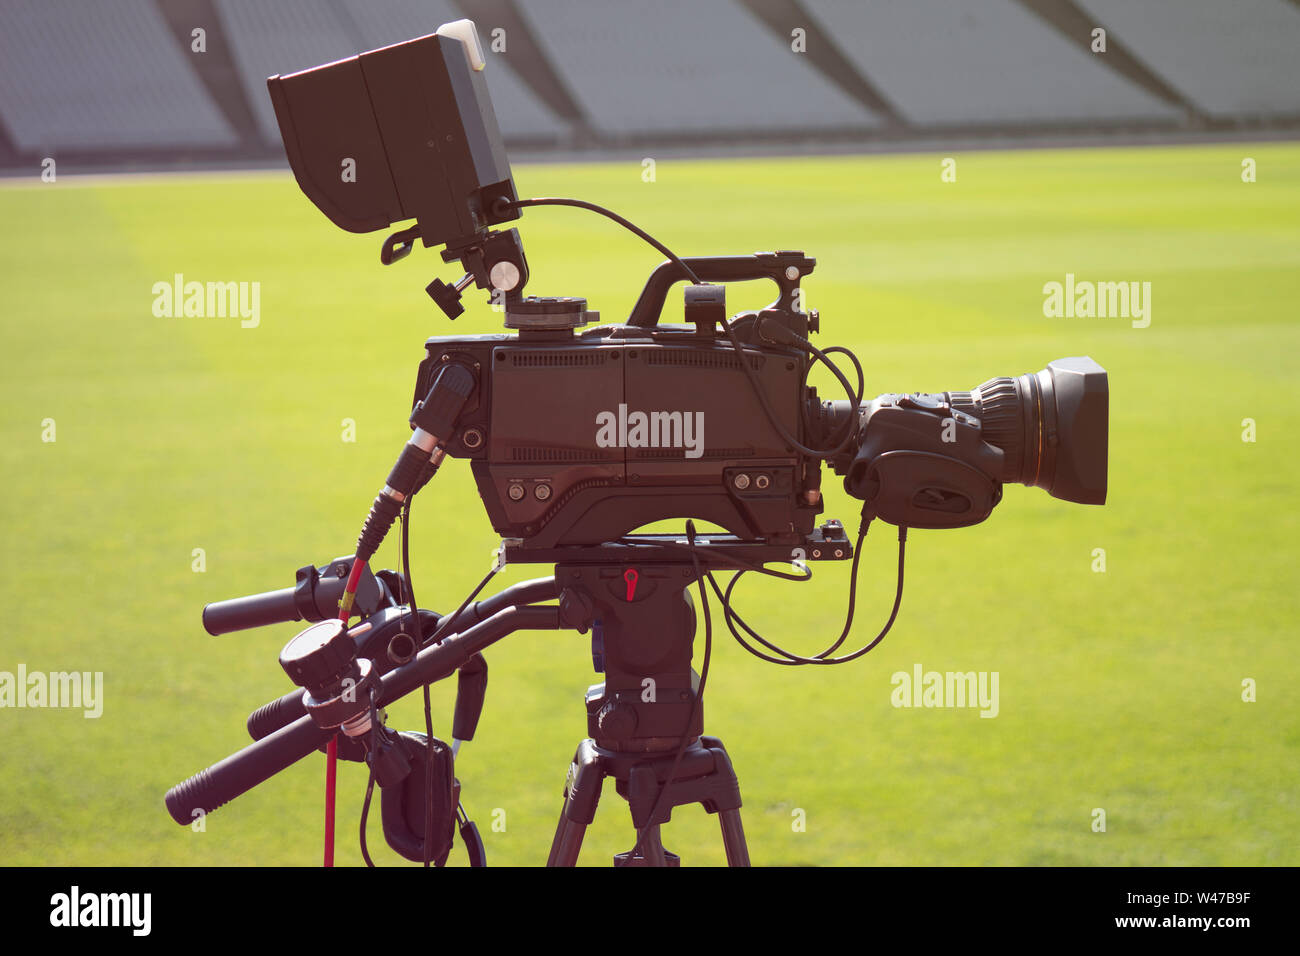 TV-Kamera im Stadion bei Fußballspielen Stockfotografie - Alamy